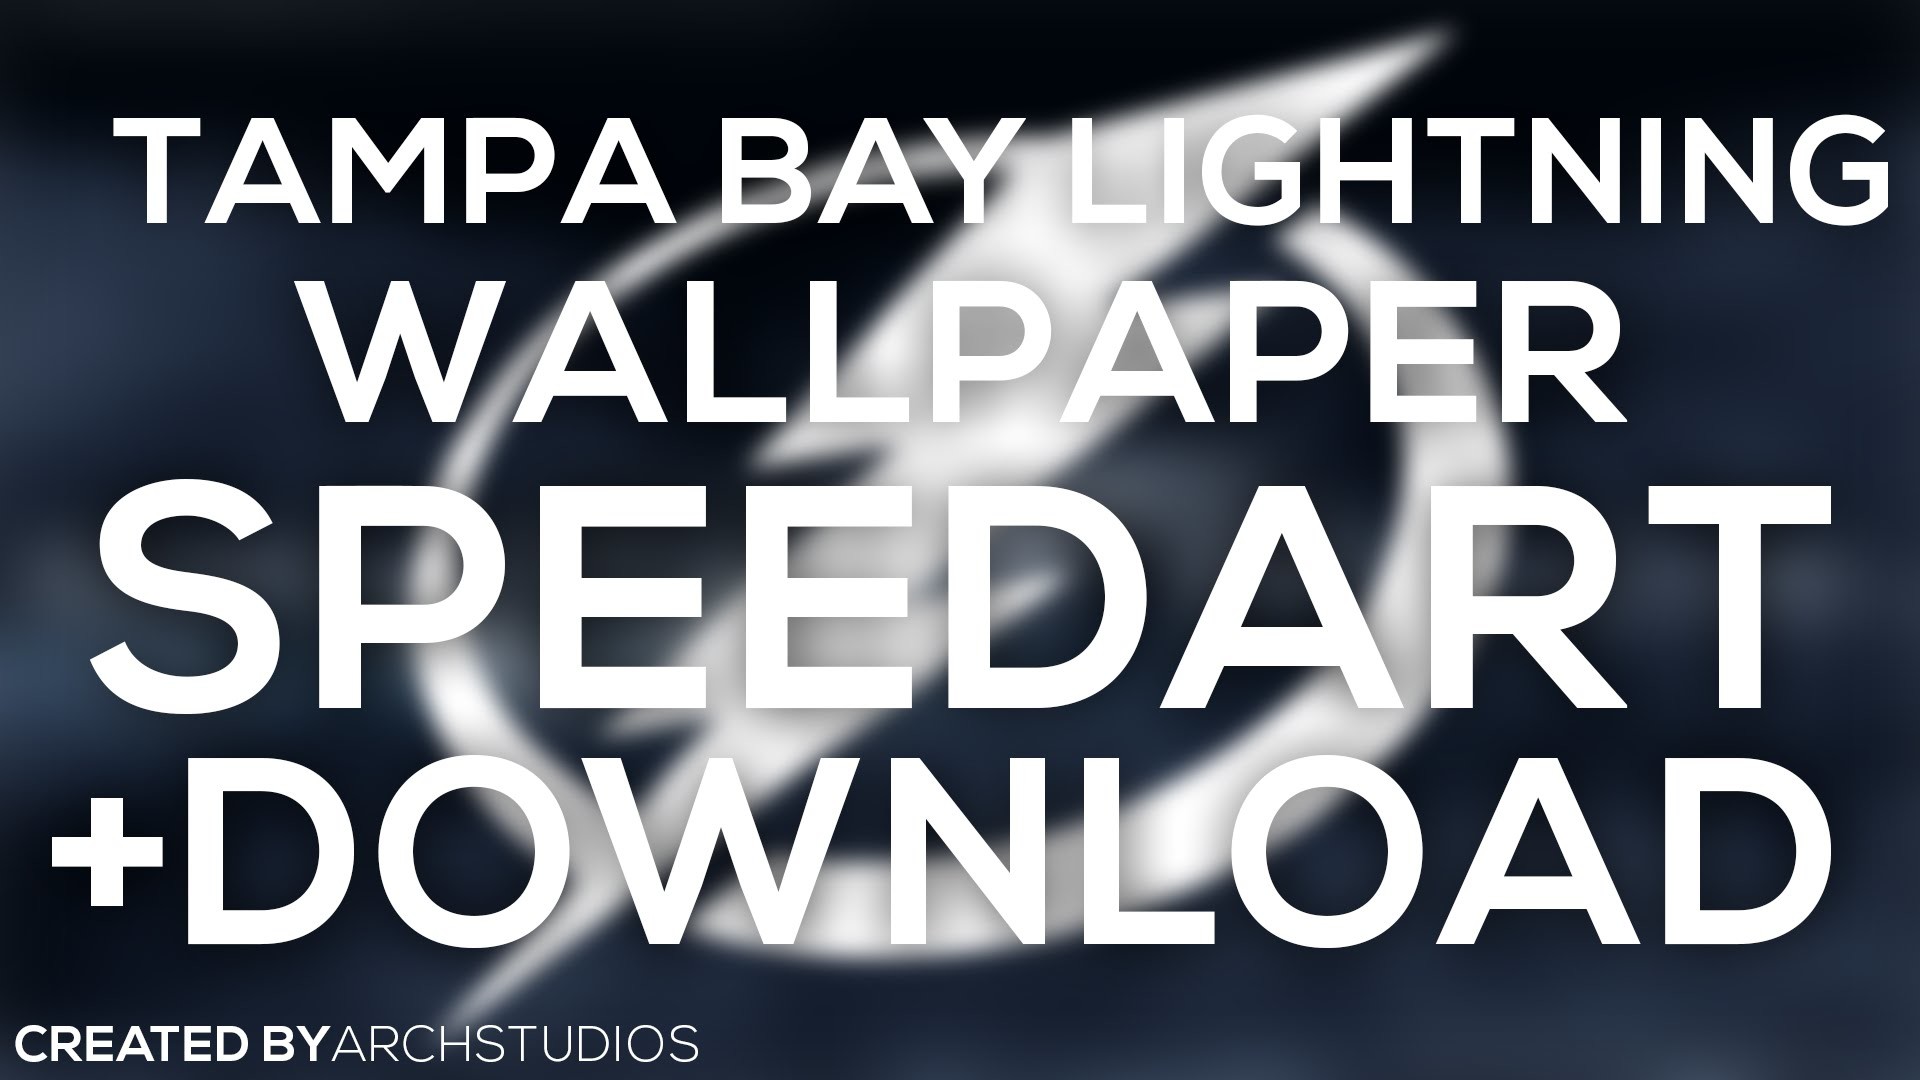 SPEEDART: Tampa Bay Lightning Wallpaper